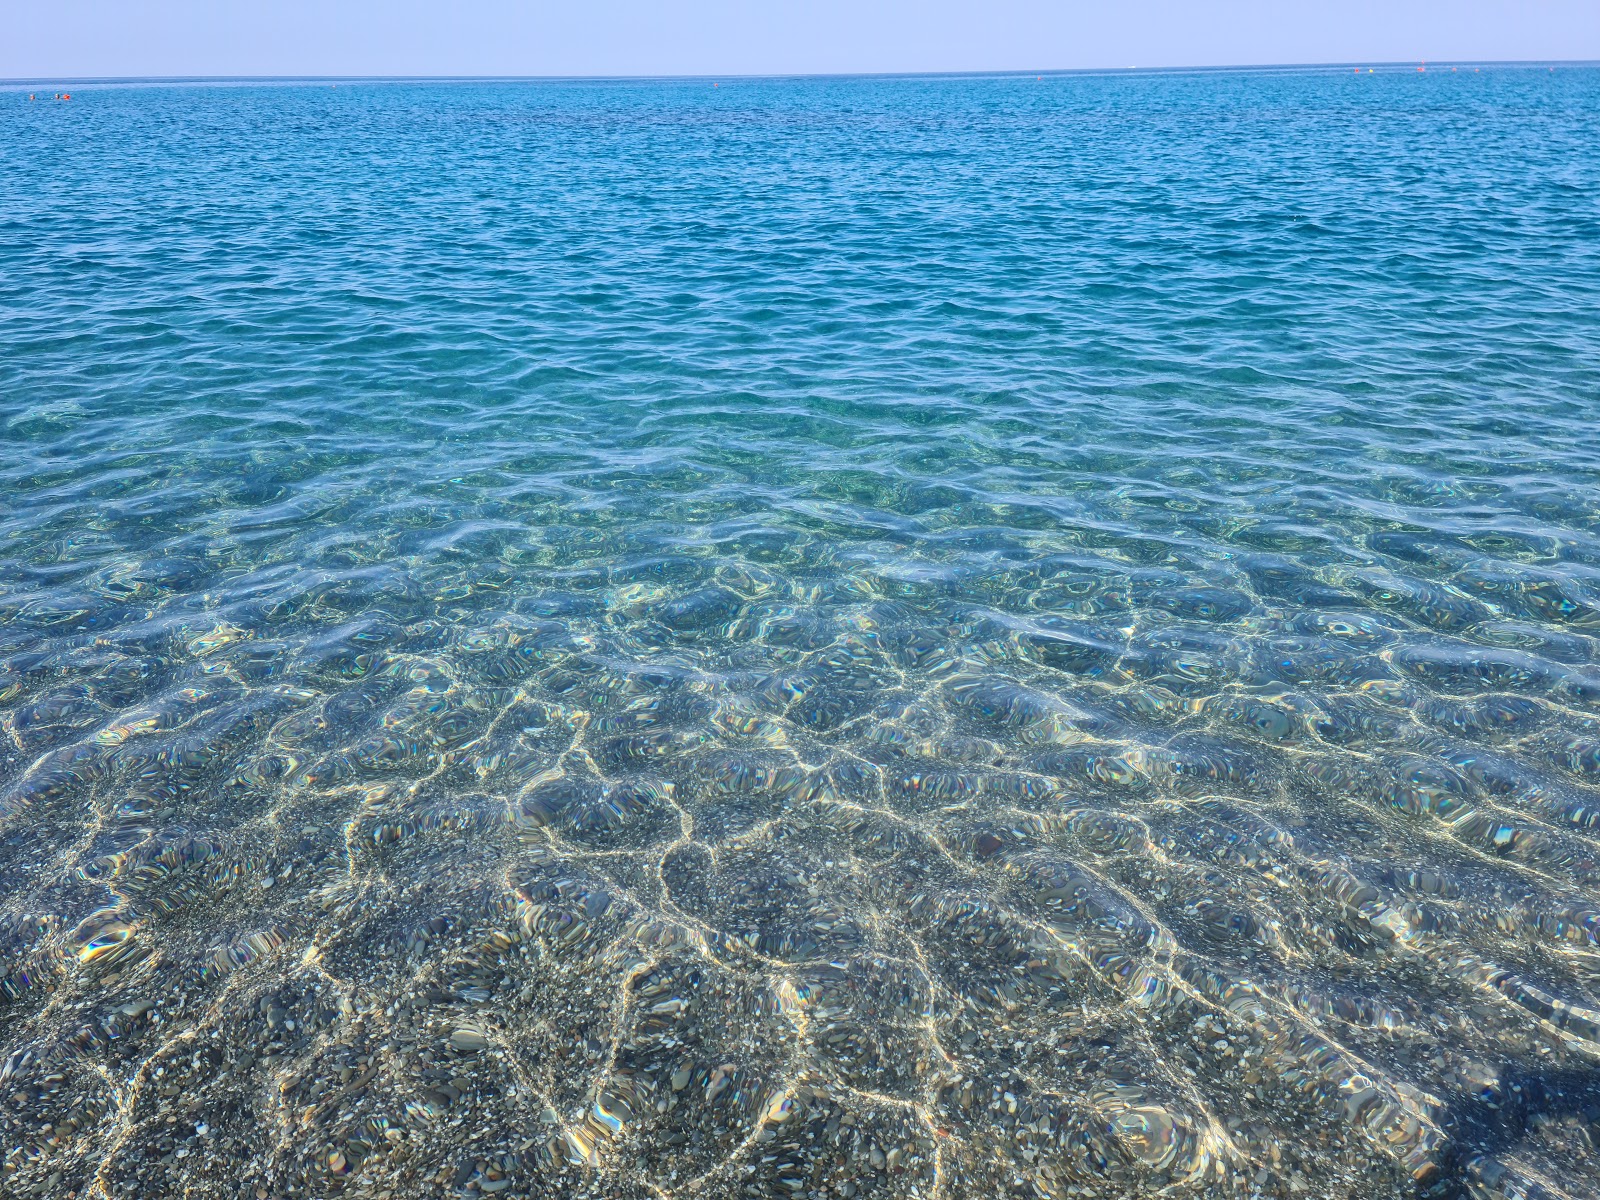 Photo of Spiaggia di Capogrosso located in natural area